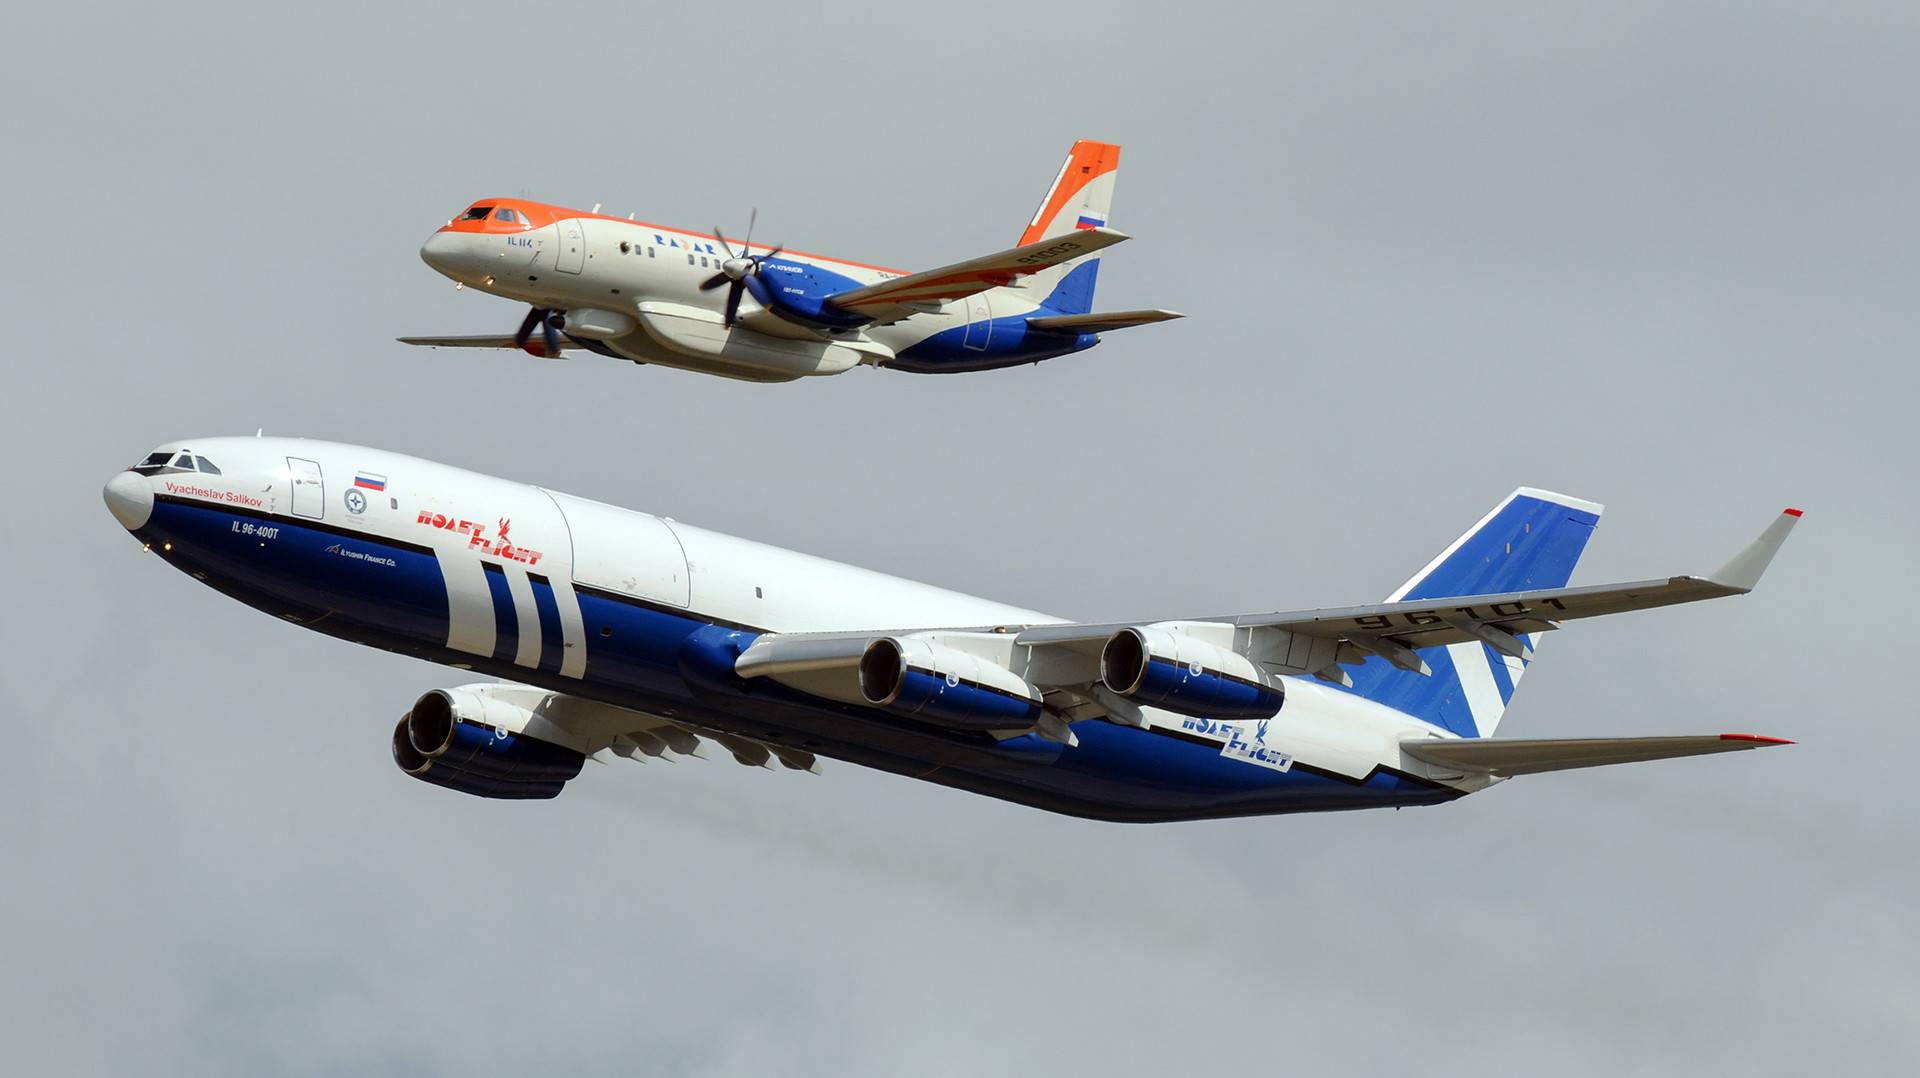 Две модели авиалайнера ил-96 с трагичными судьбами